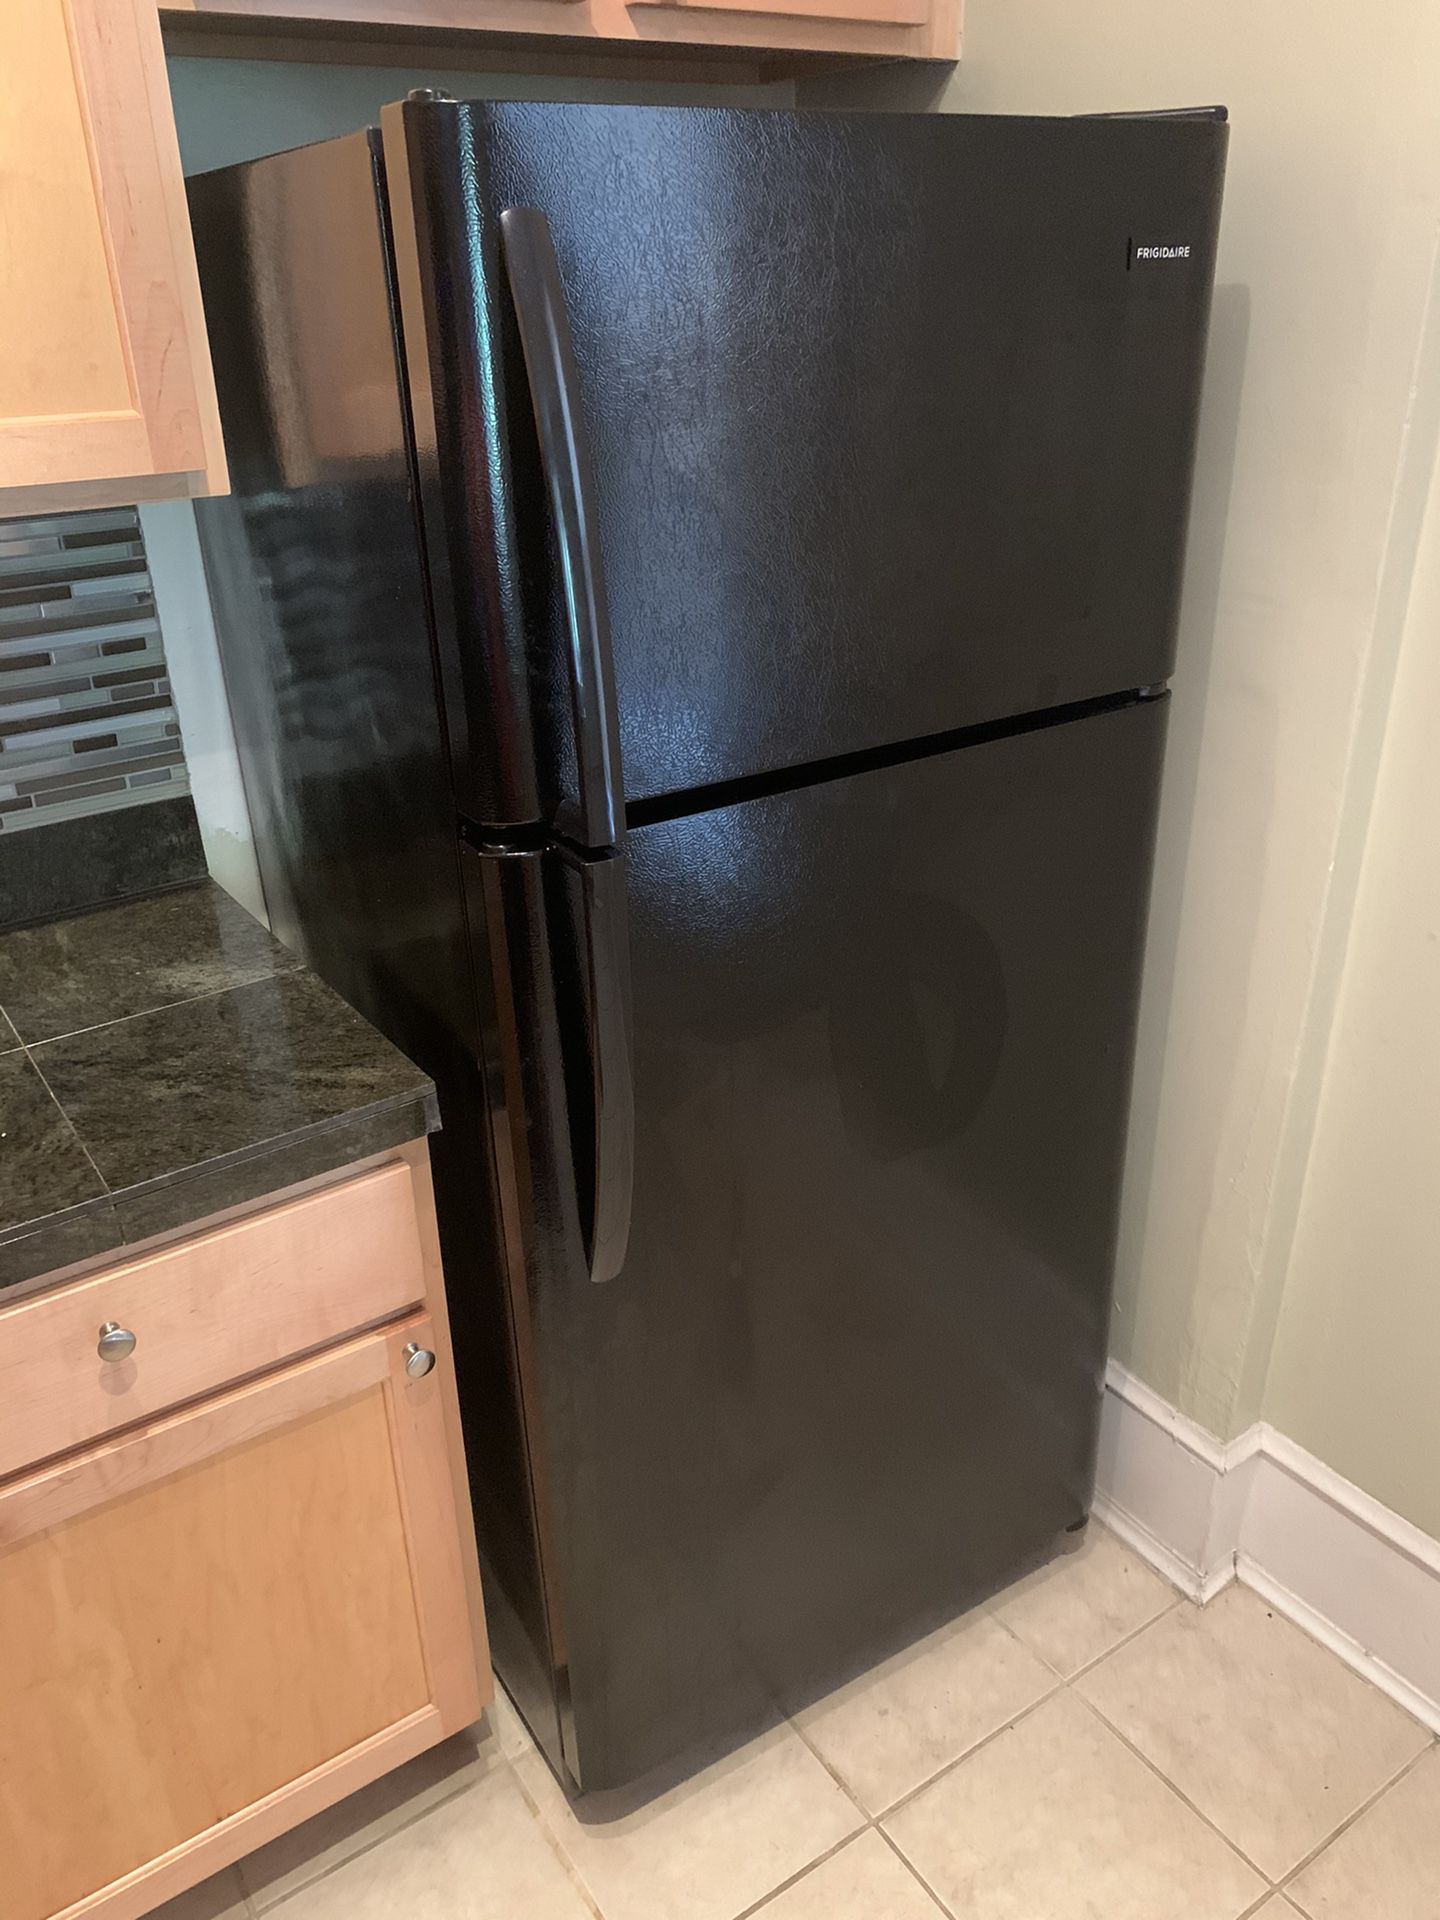 Frigidaire refrigerator (black)